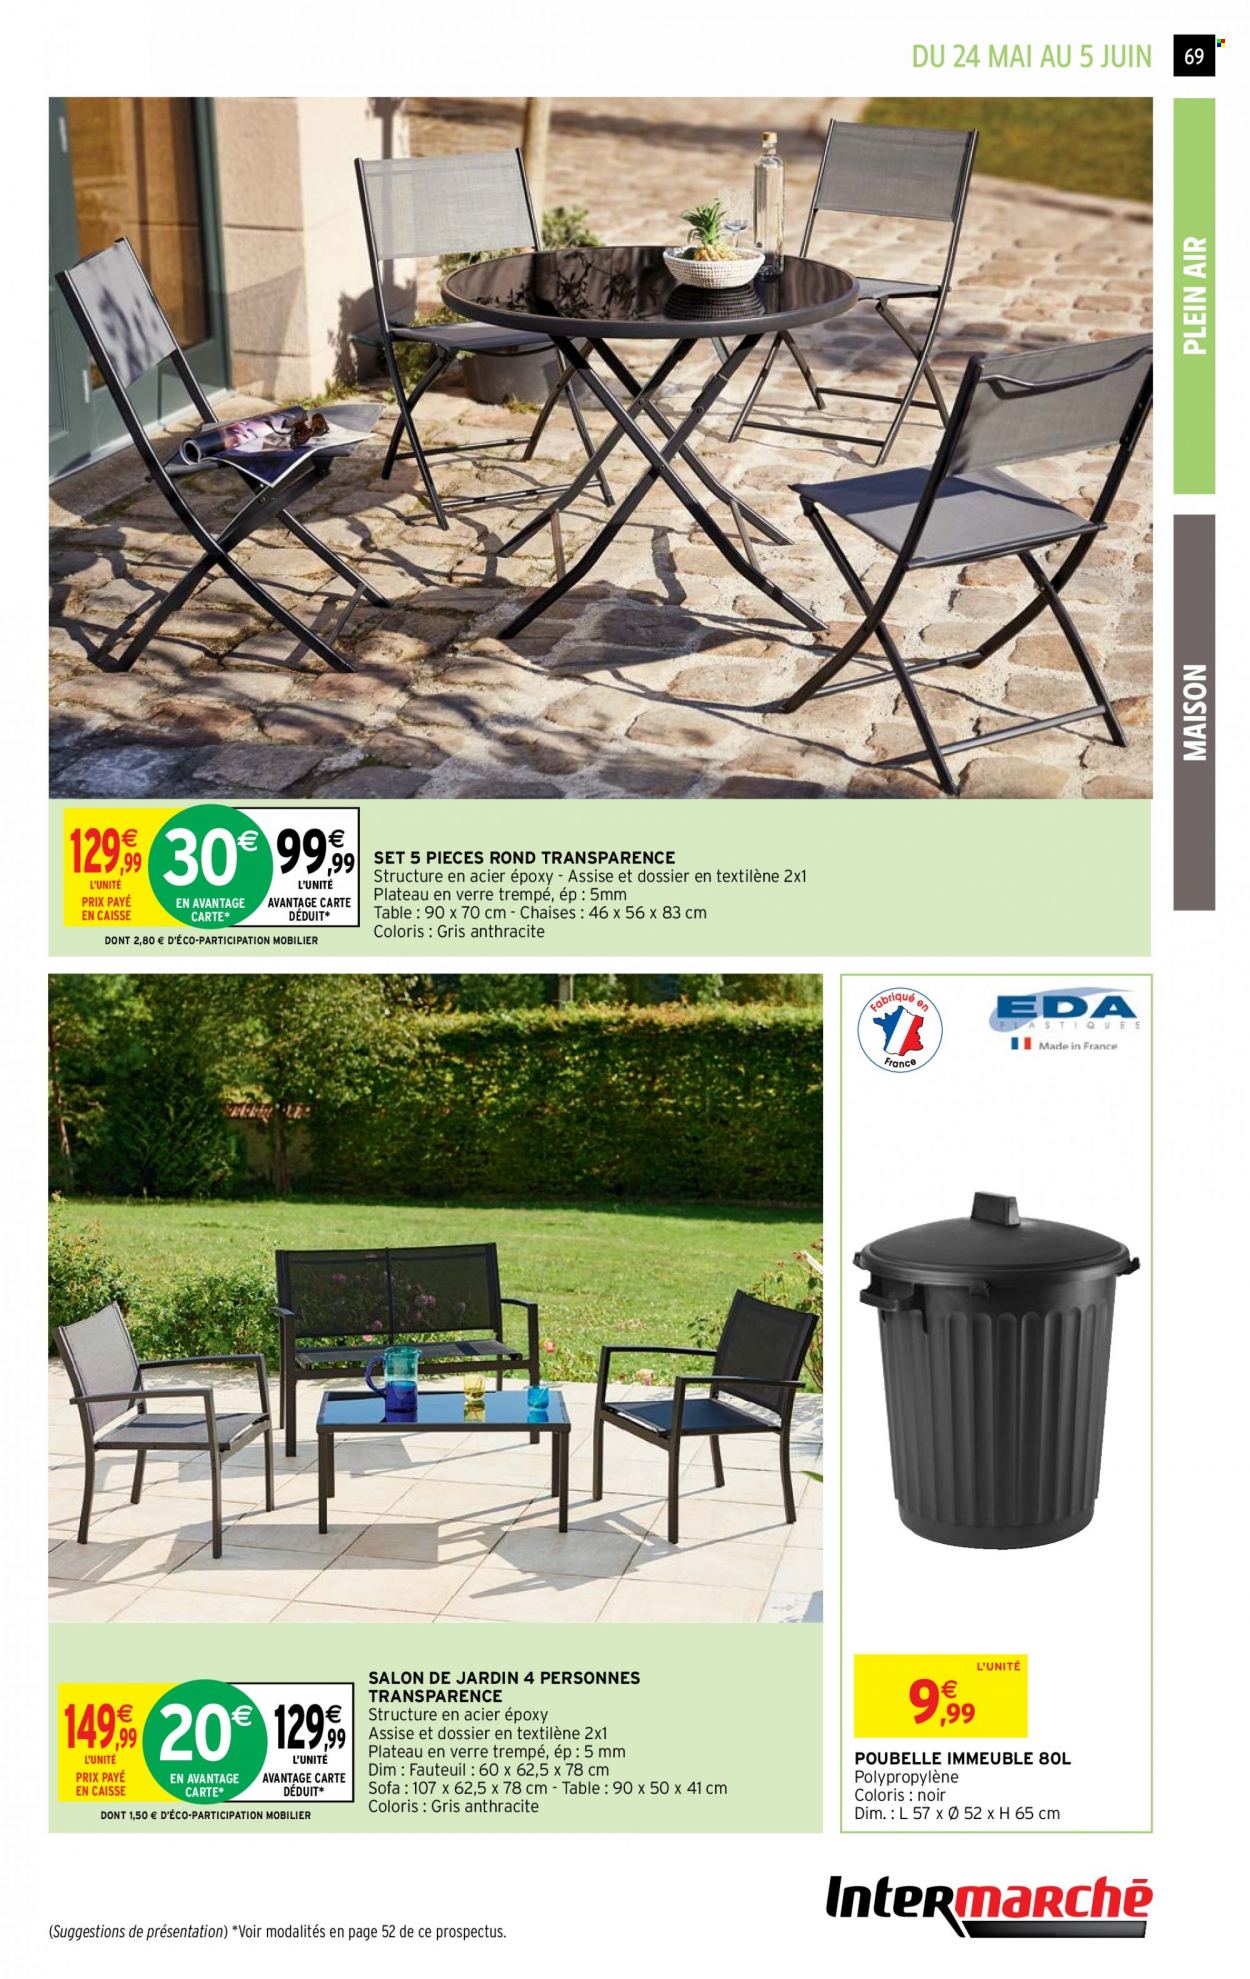 thumbnail - Catalogue Intermarché Hyper - 24/05/2022 - 05/06/2022 - Produits soldés - table, chaise, poubelle, fauteuil, salon de jardin, maison. Page 69.